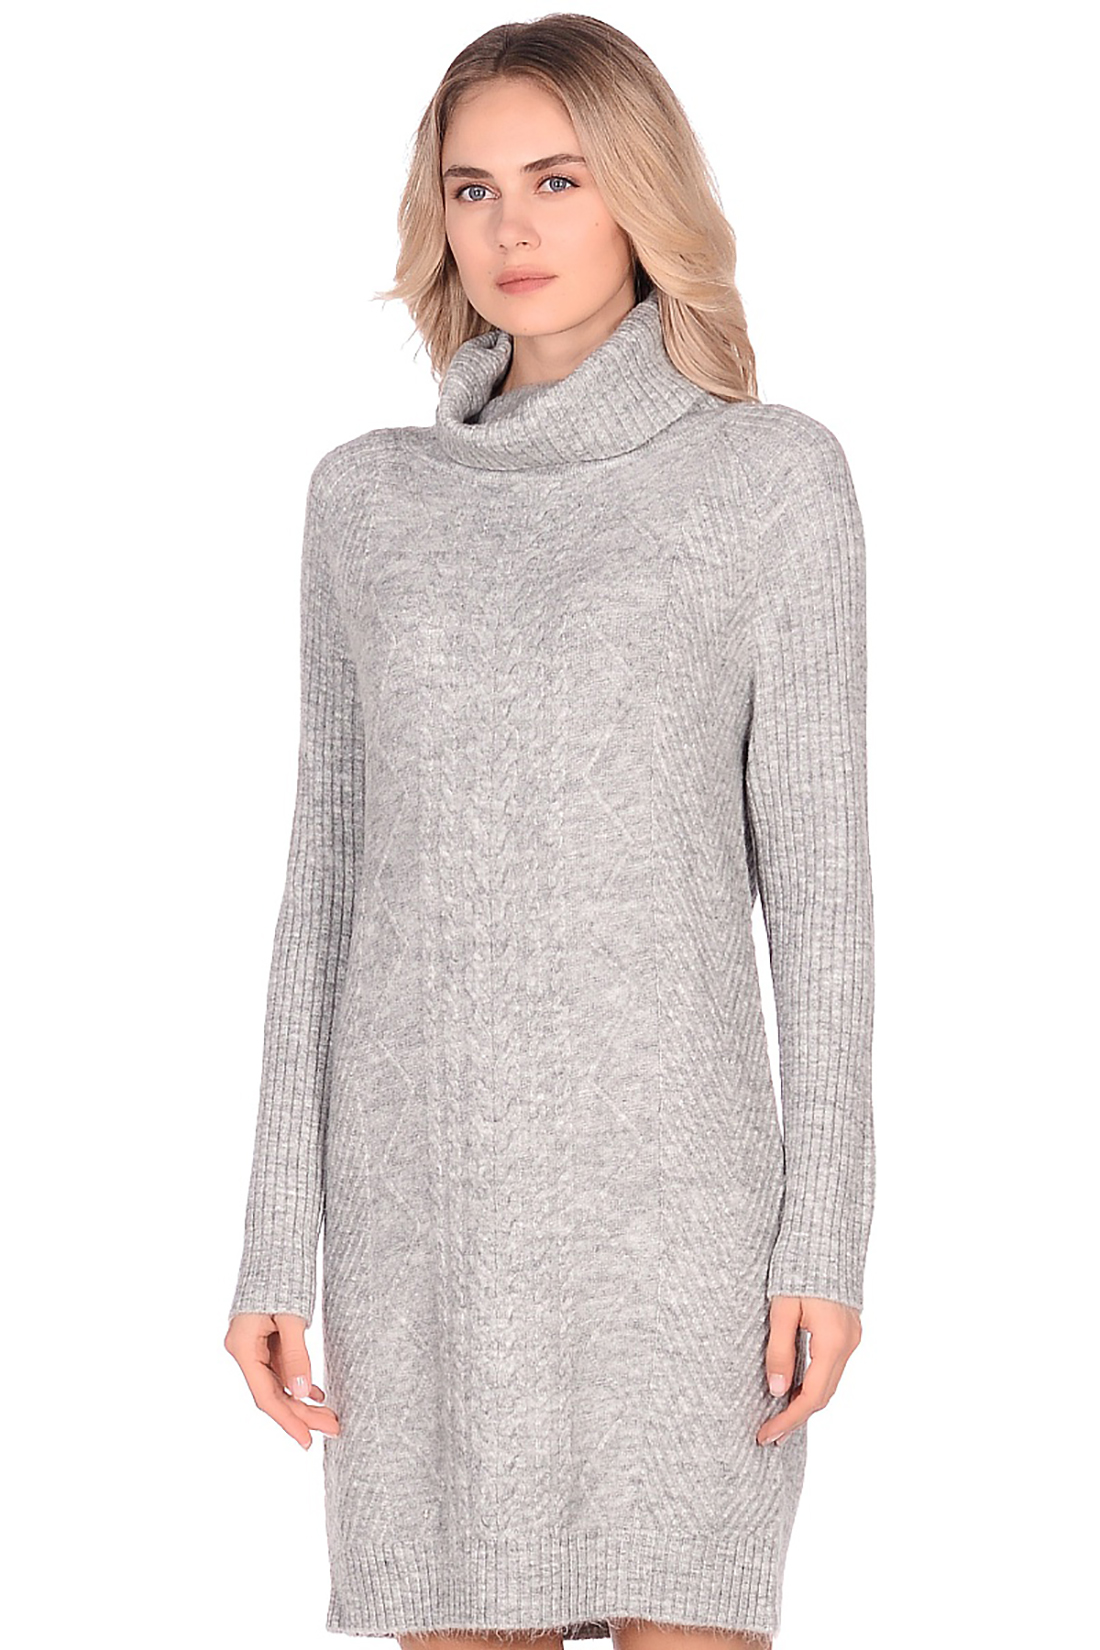 Платье-свитер с узором (арт. baon B459542), размер XL, цвет silver melange#серый Платье-свитер с узором (арт. baon B459542) - фото 3